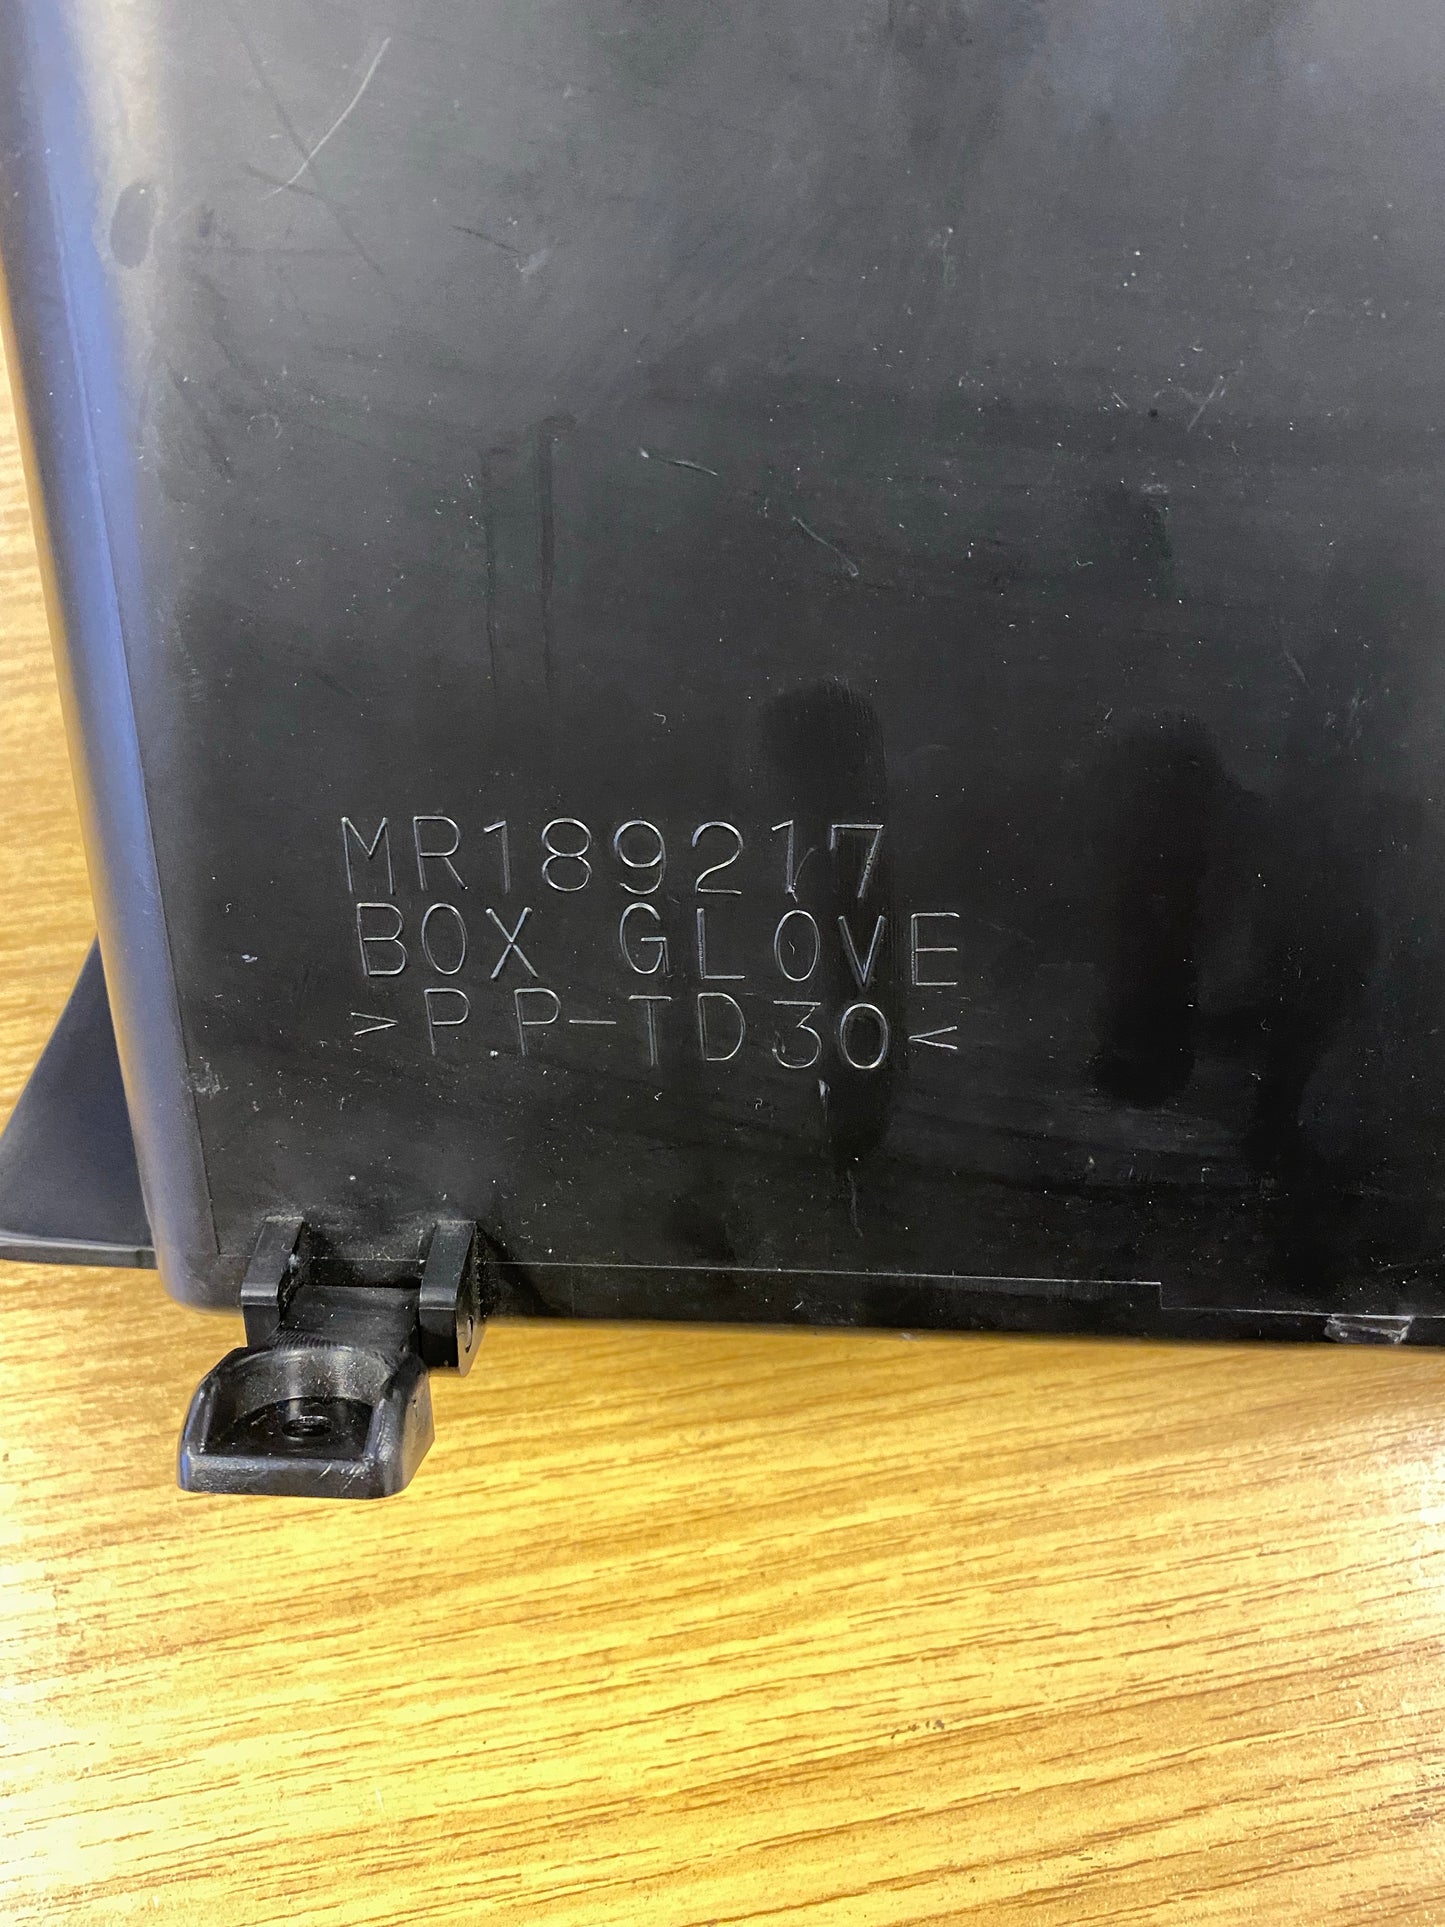 Mitsubishi Evo 4 Evo 5 Evo 6 Glove Box Compartment MR189217 Broken Clip